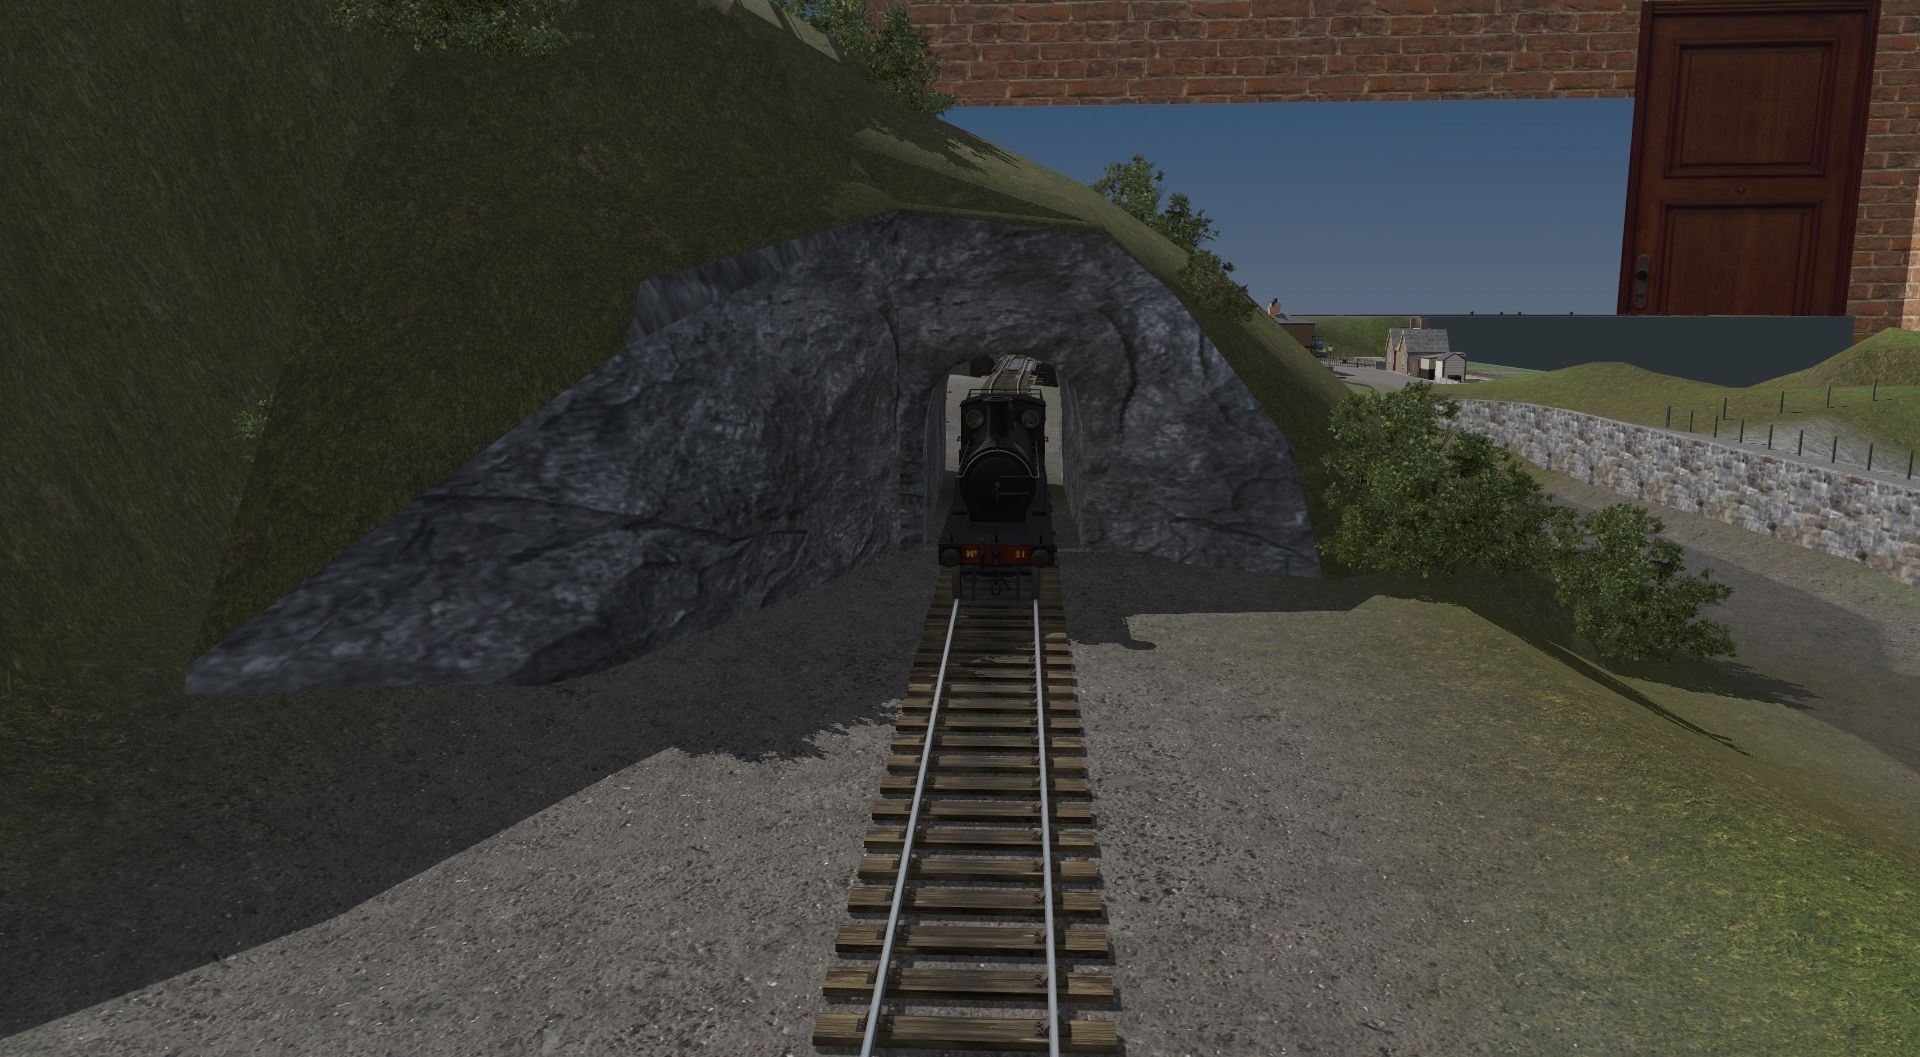 SG-Meddenhorn-Tunnel.jpg